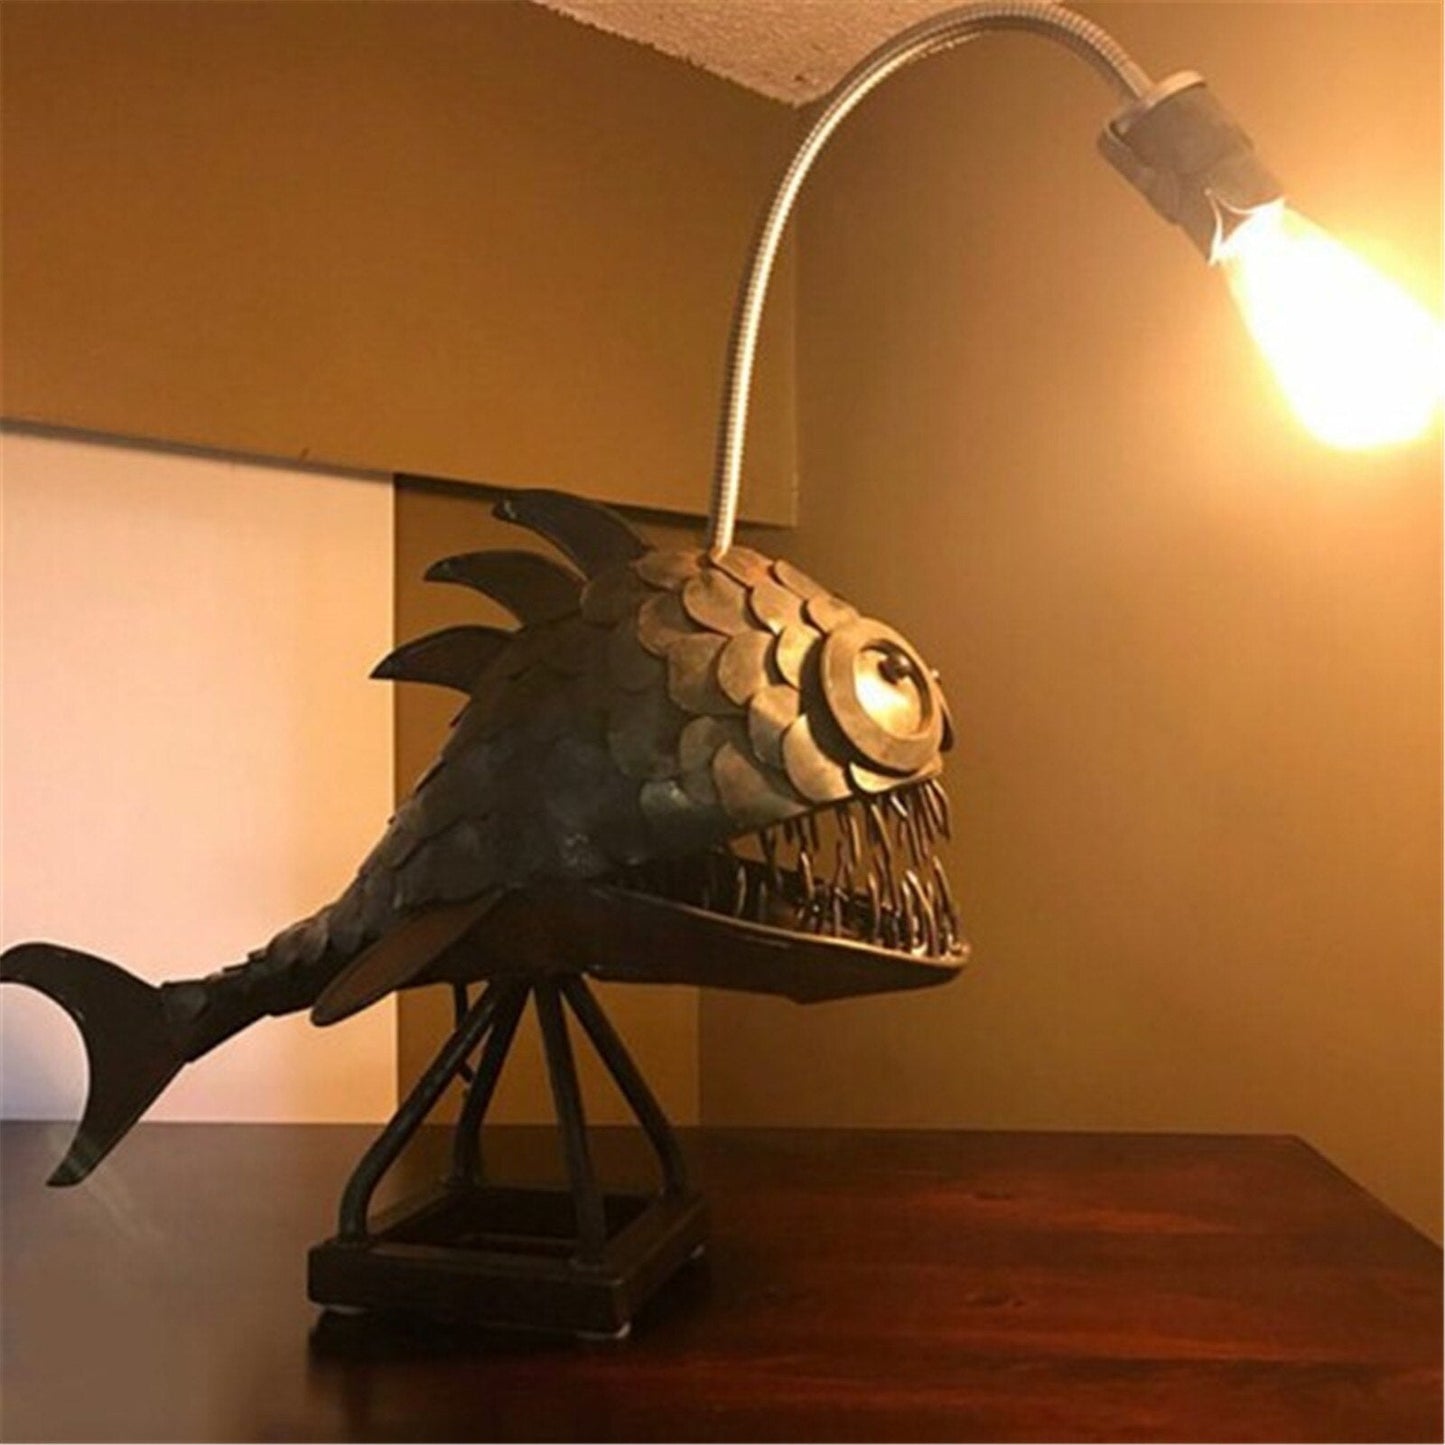 Lampu meja retro lampu ikan pemancing dengan lampu fleksibel lampu meja artistik untuk home bar kafe seni ornamen dekoratif